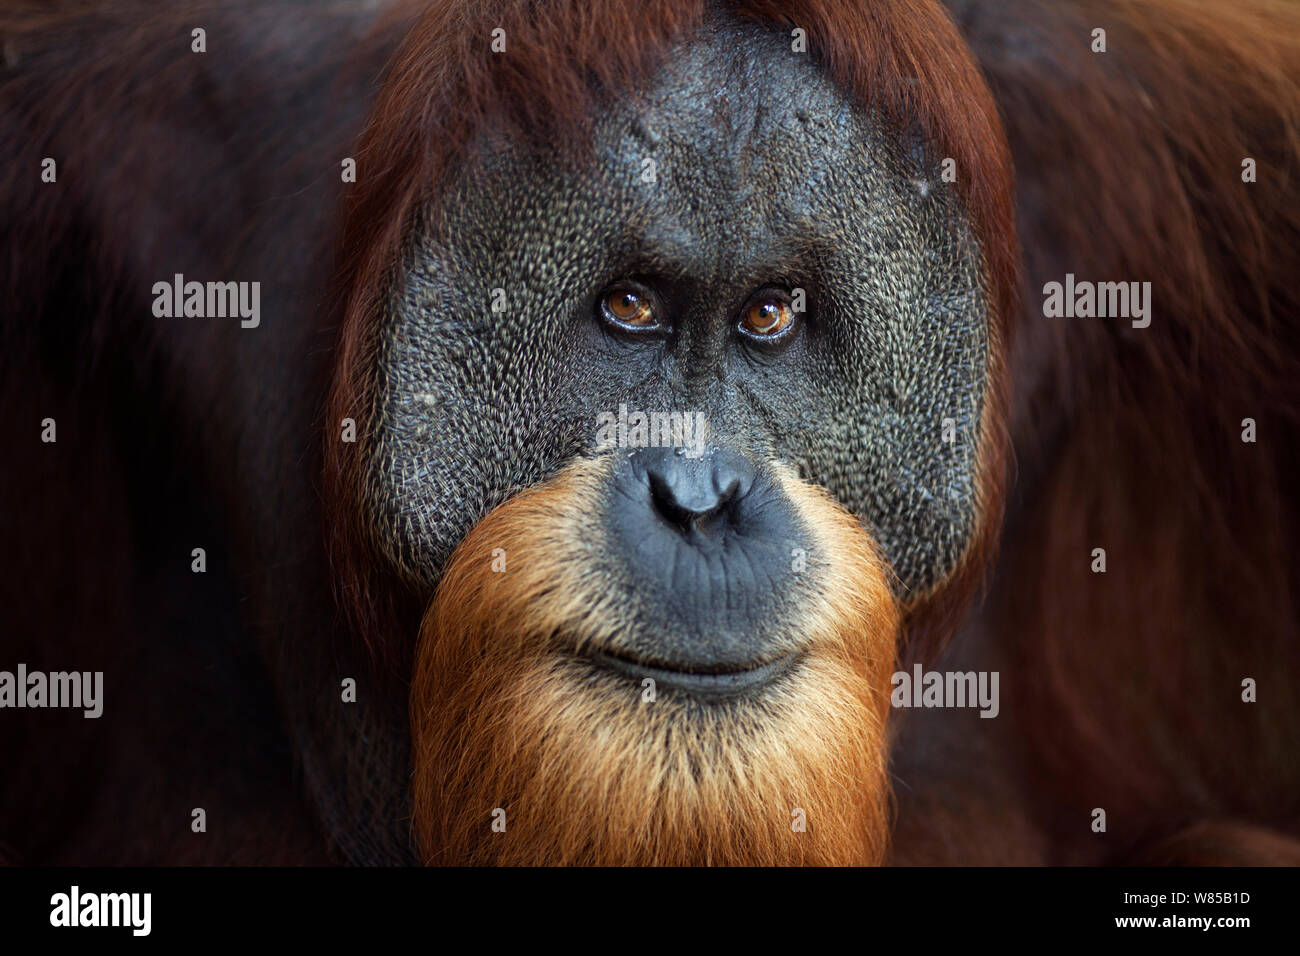 L'orang-outan de Sumatra (Pongo abelii) 'mae matures à l'âge de 26 ans Halik' portrait. Parc national de Gunung Leuser, Sumatra, Indonésie. Remis en état et publié (ou les descendants de ceux qui ont été libérés) entre 1973 et 1995. Banque D'Images